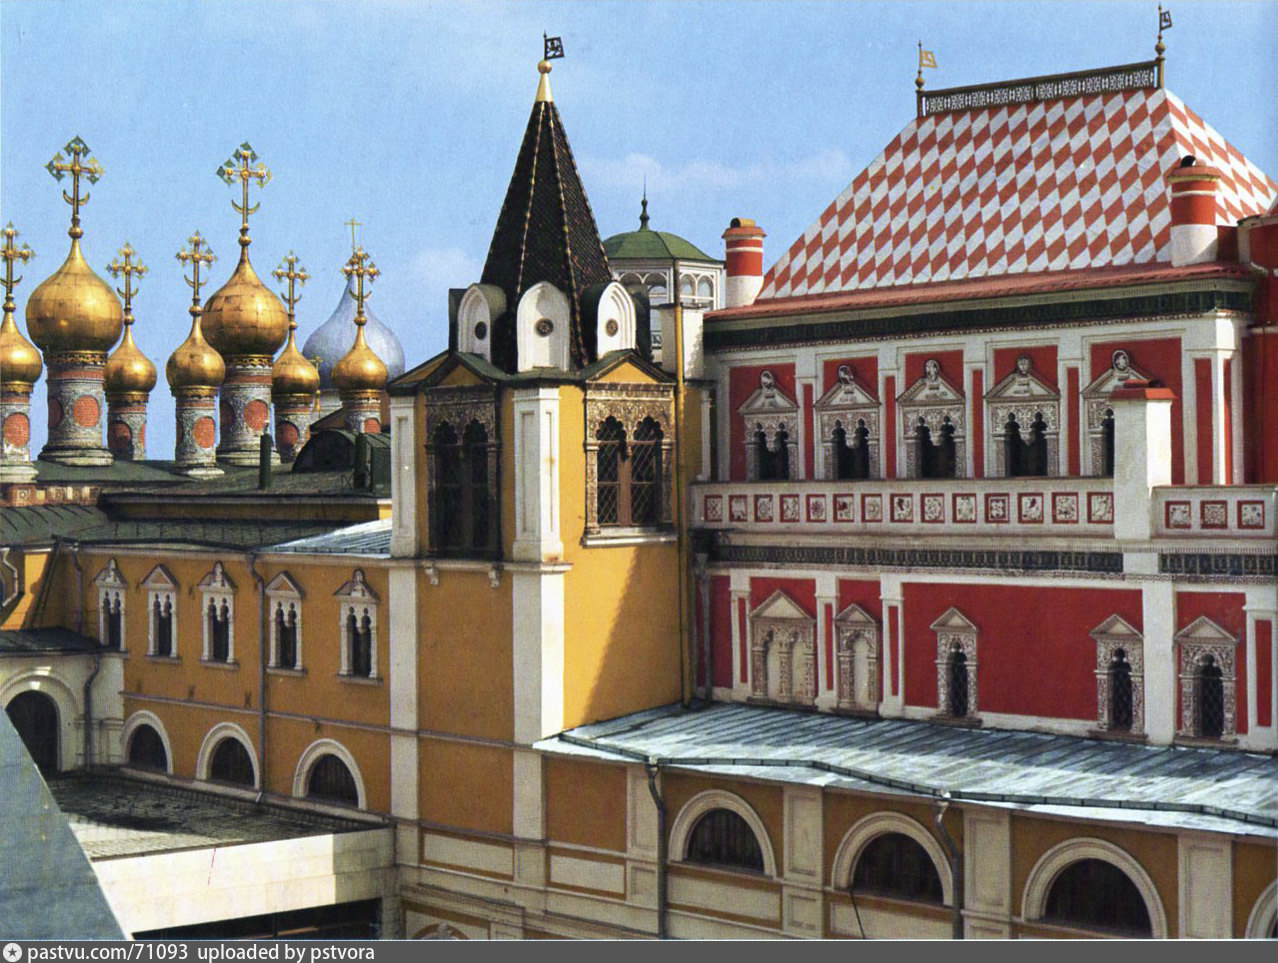 теремной дворец московского кремля внутри